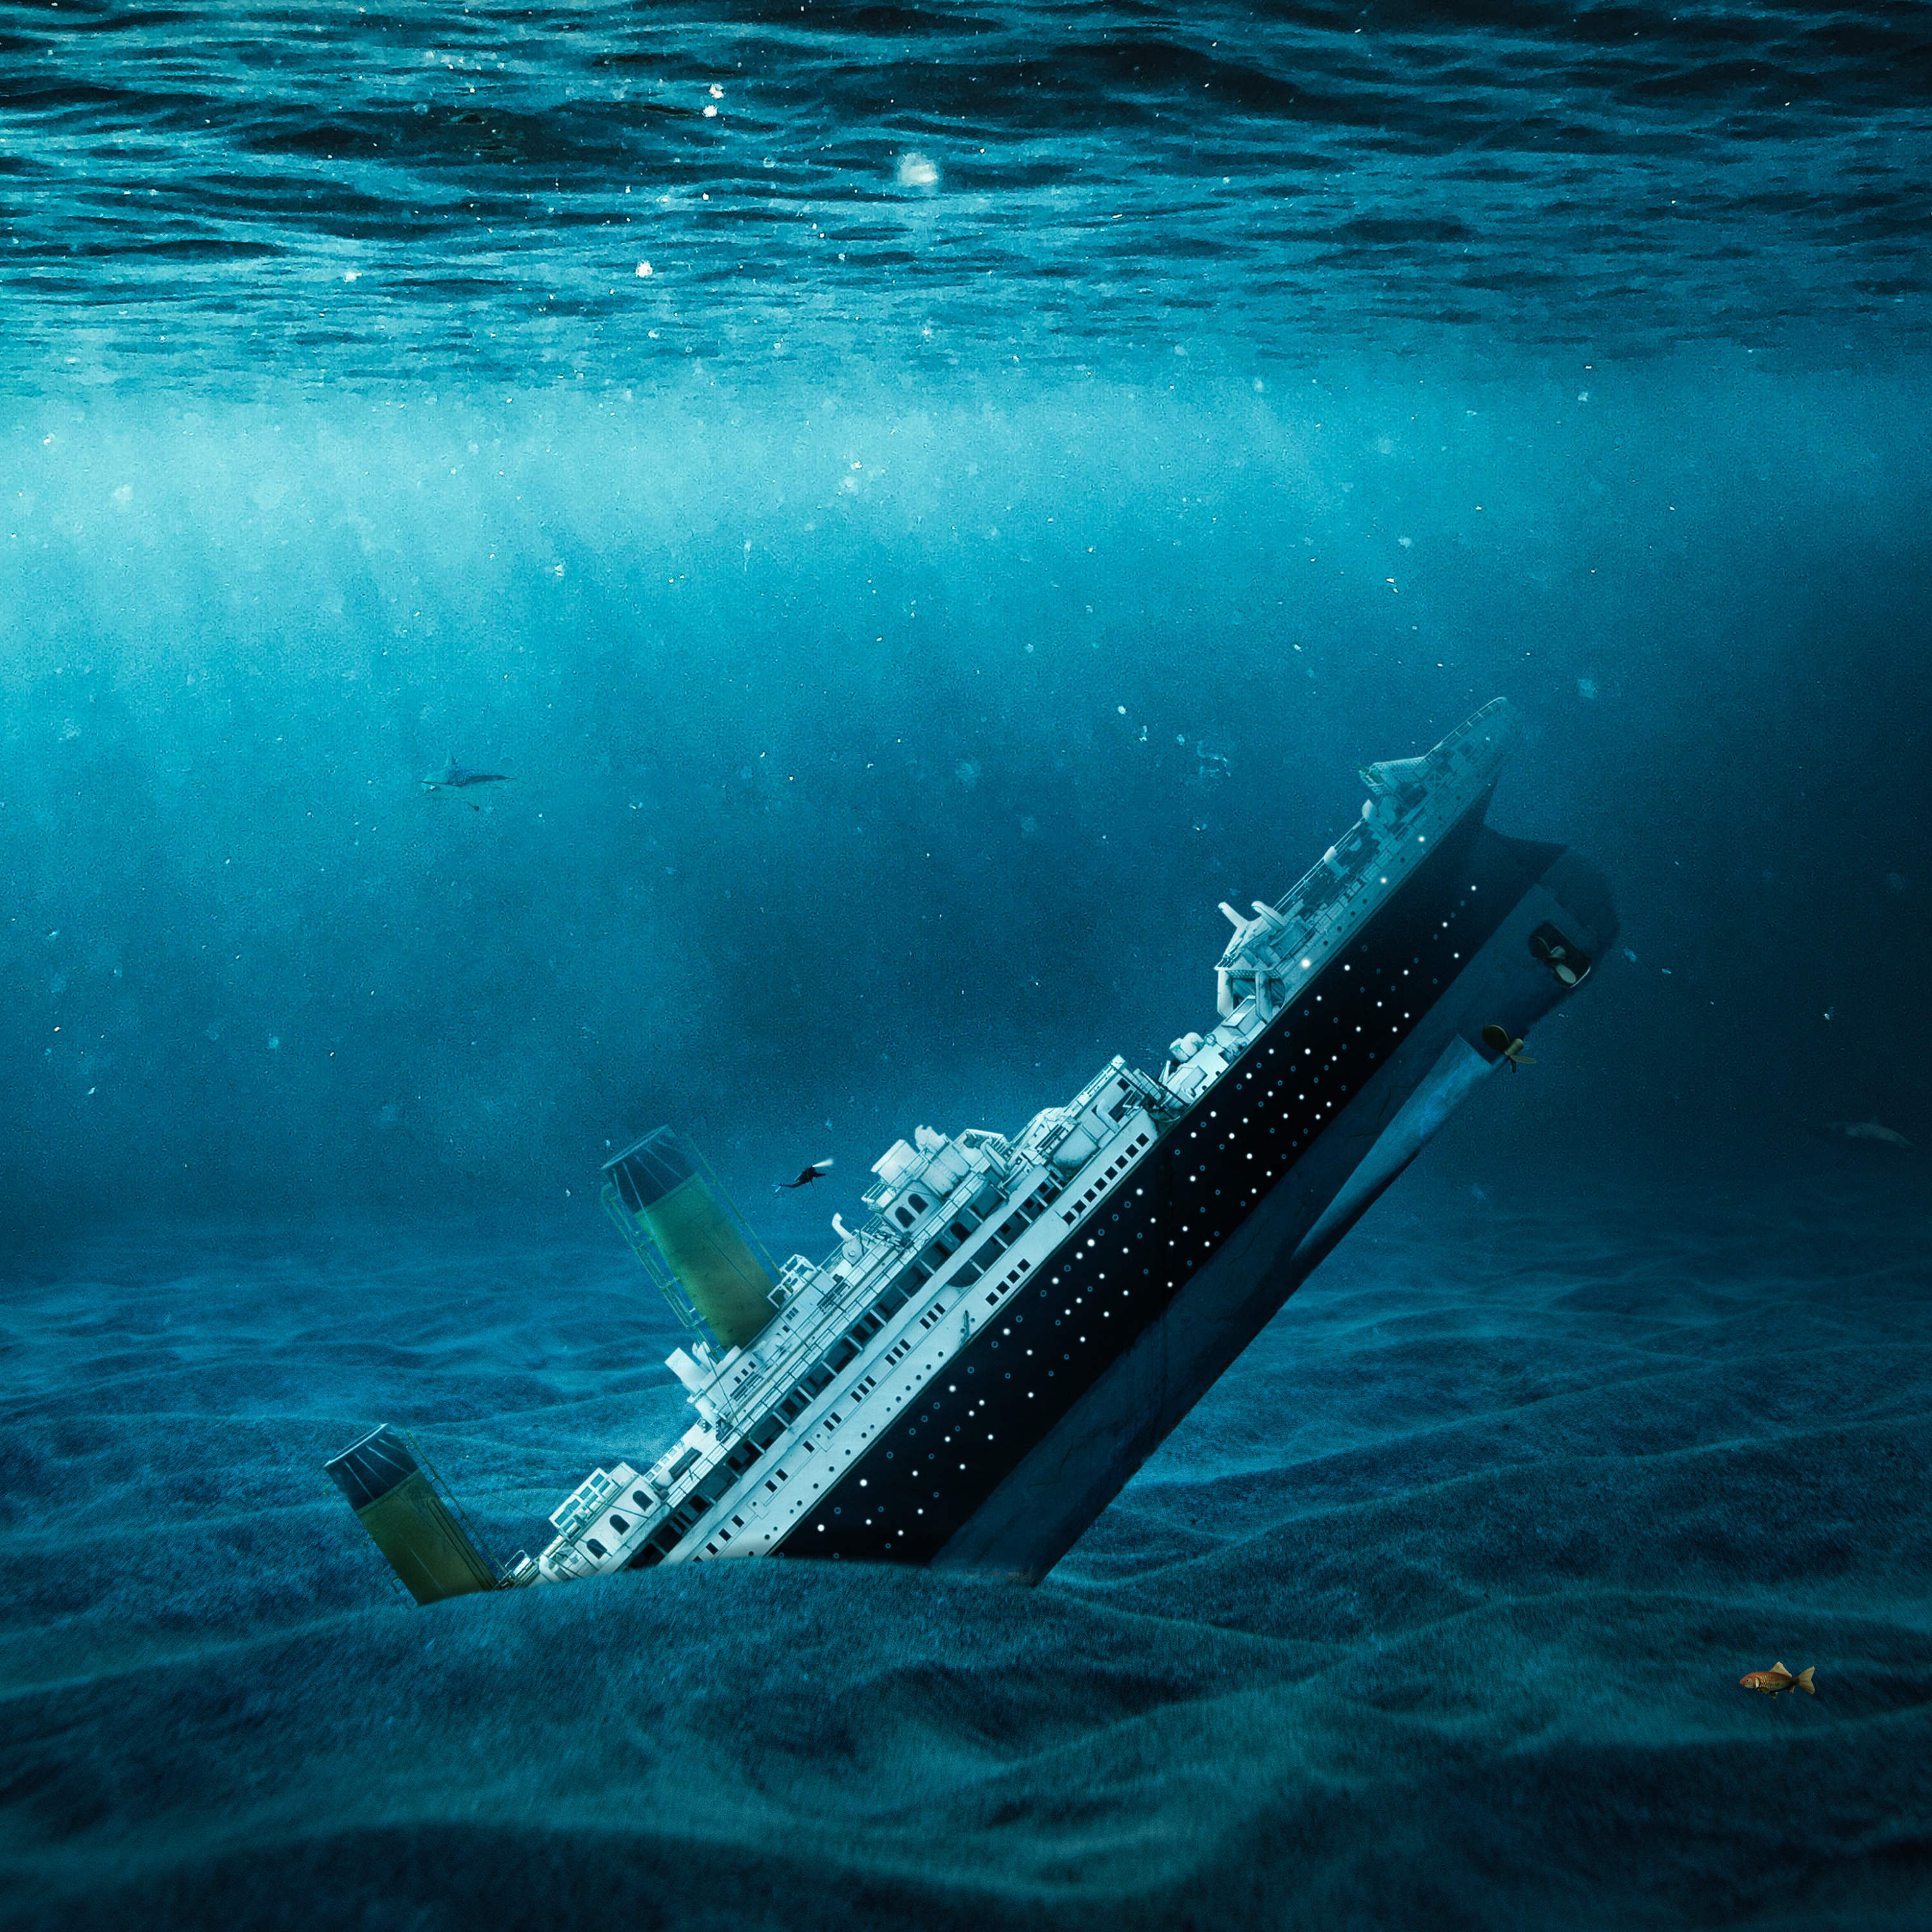 Create an Underwater Titanic Scene in Photoshop - Photoshop Tutorials